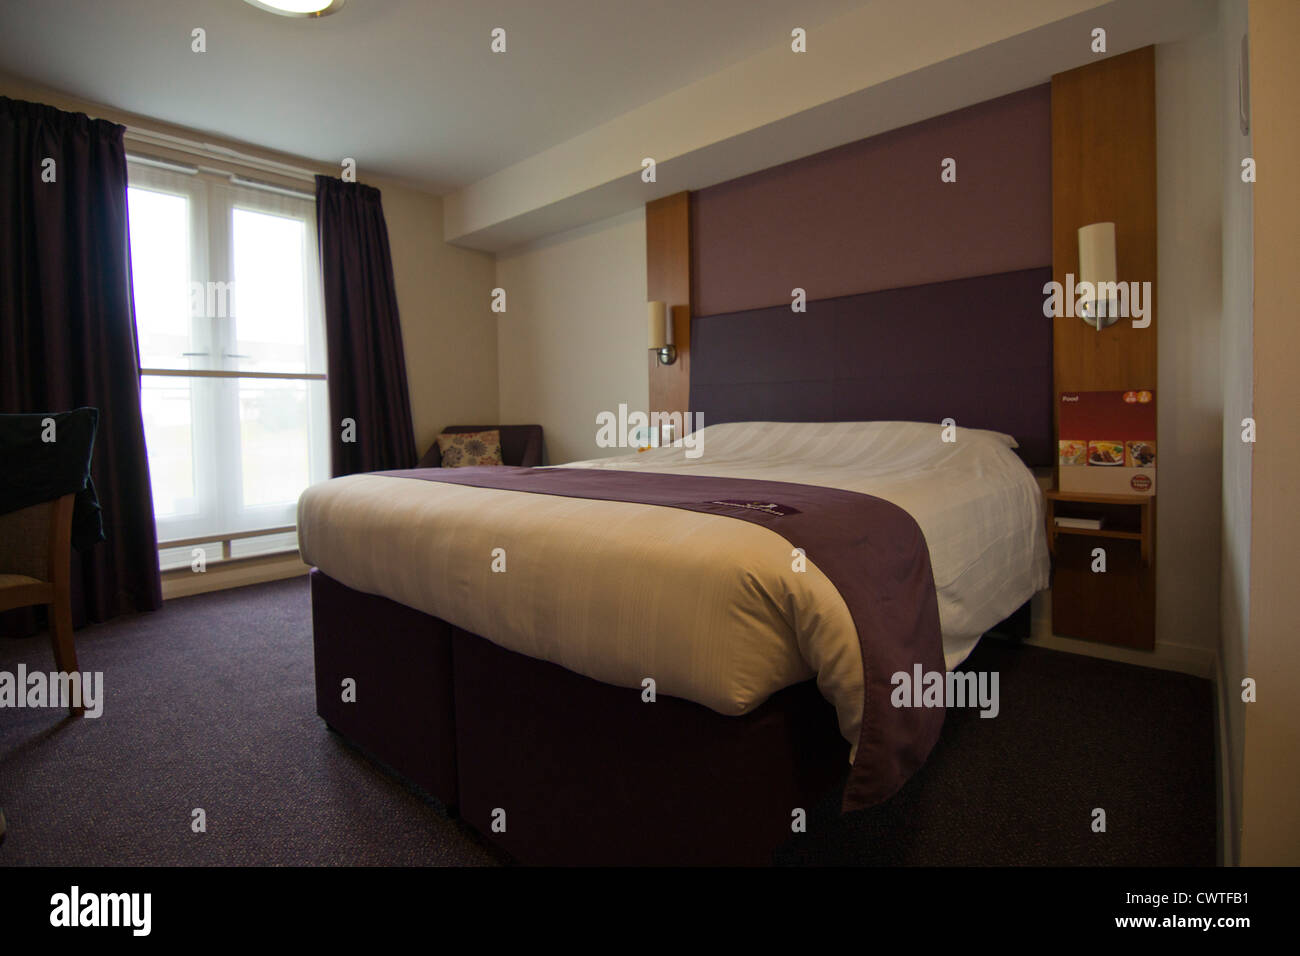 Premier Inn hotel room Stock Photo